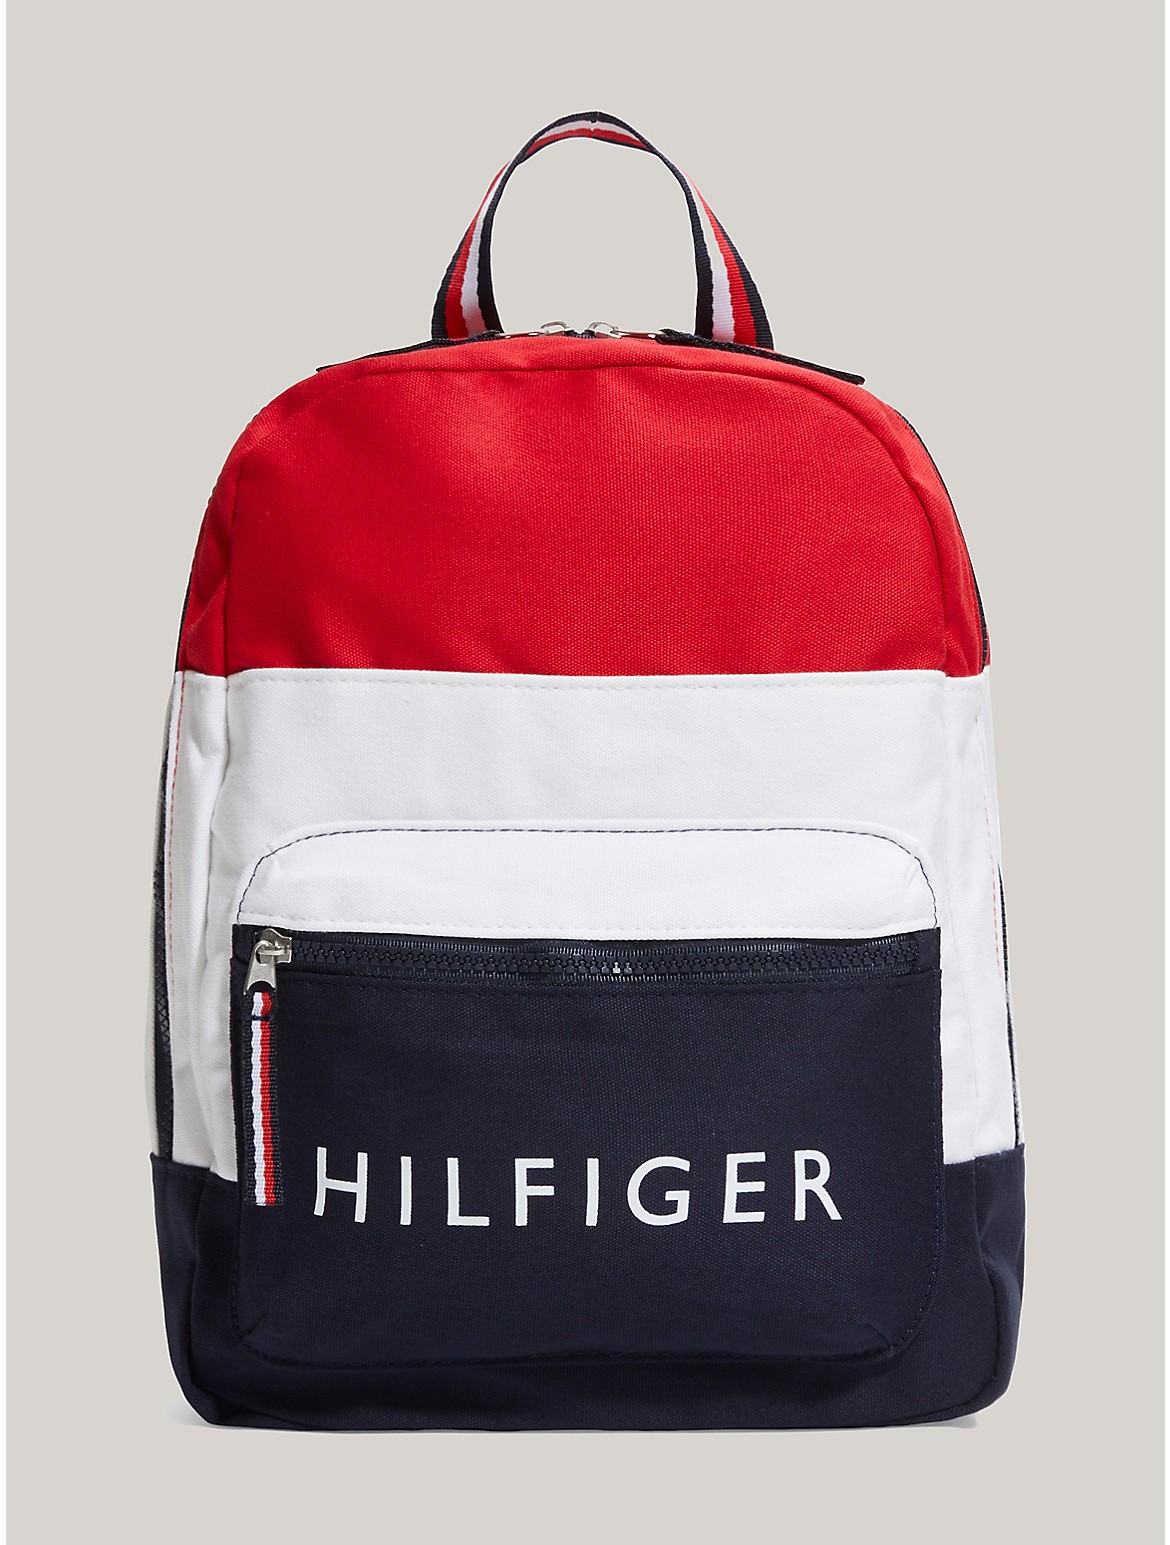 Tommy Hilfiger Kids' Hilfiger Logo Colorblock Backpack